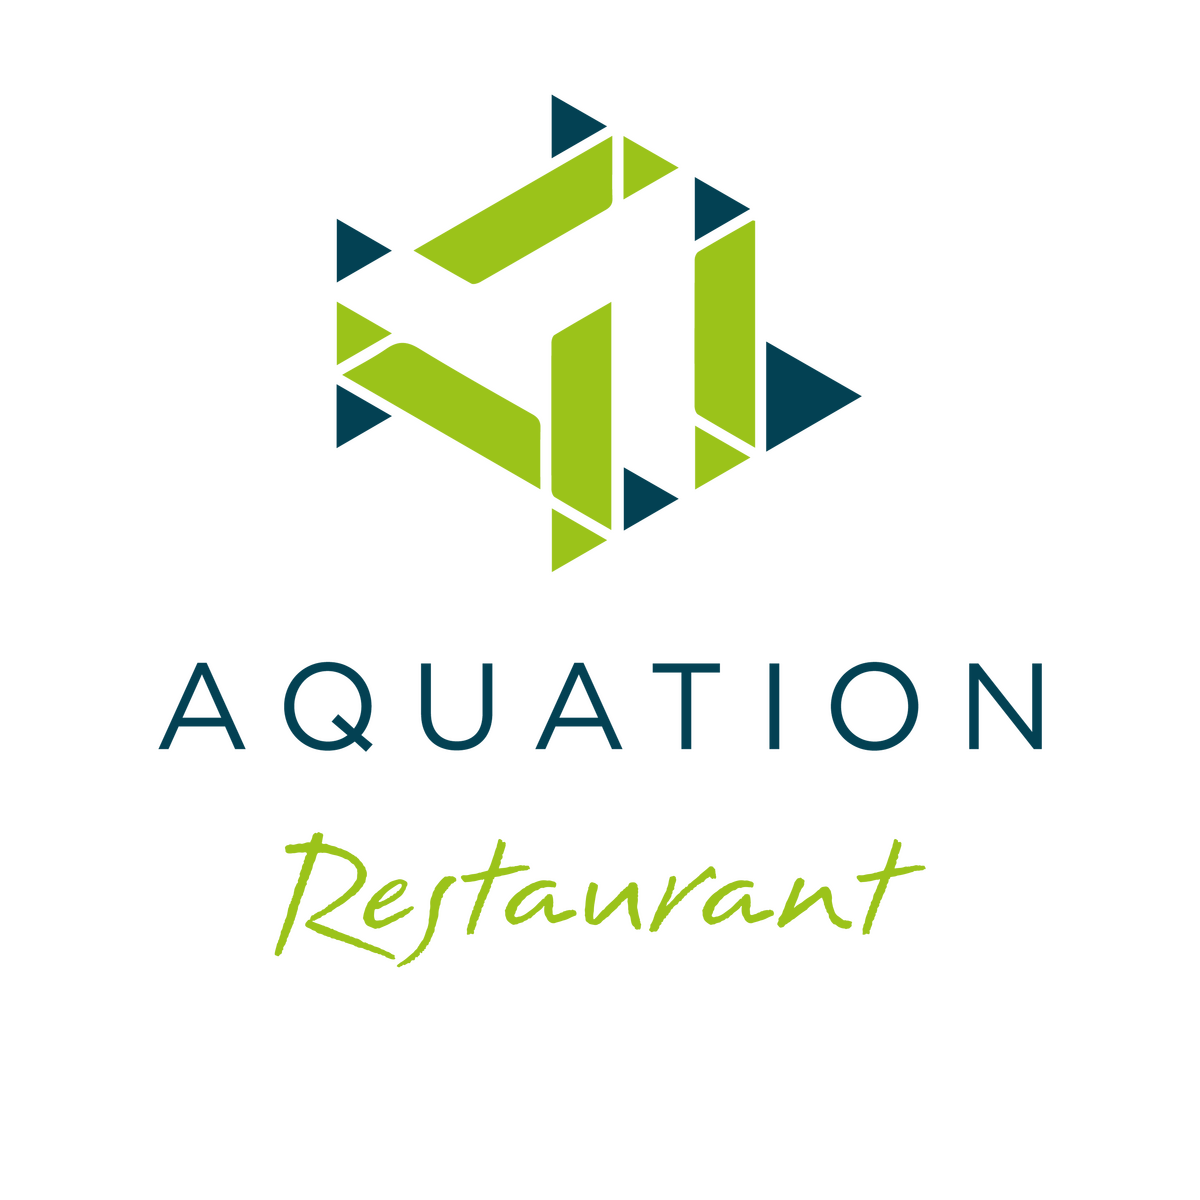 Aquation&#x20;Restaurant&#x20;logo&#x20;copy